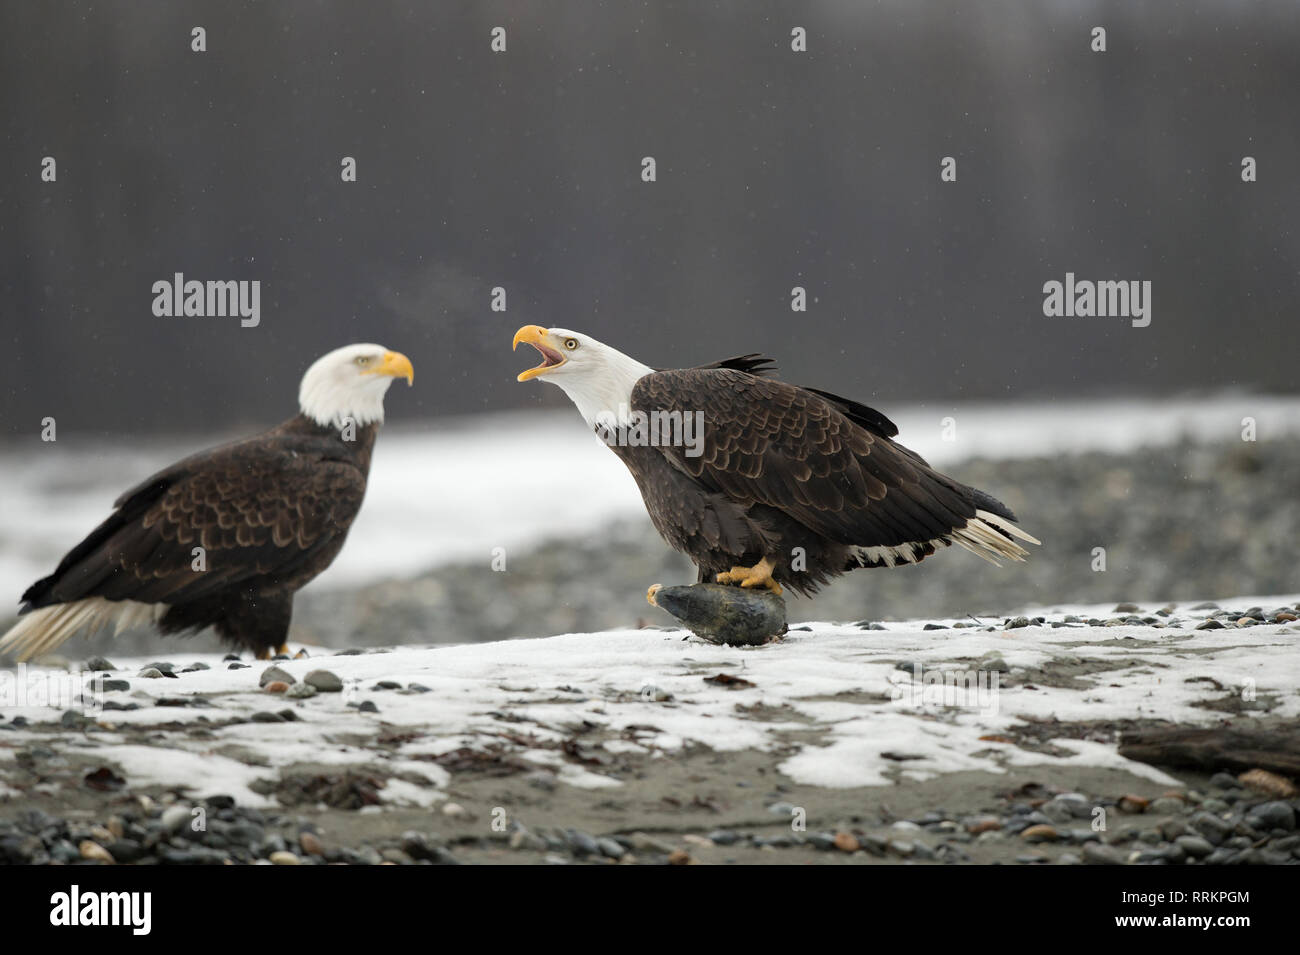 Reife bald eagle Holding a Chum salmon Kopf und Intonation eine Warnung zu einem zweiten Eagle Stockfoto